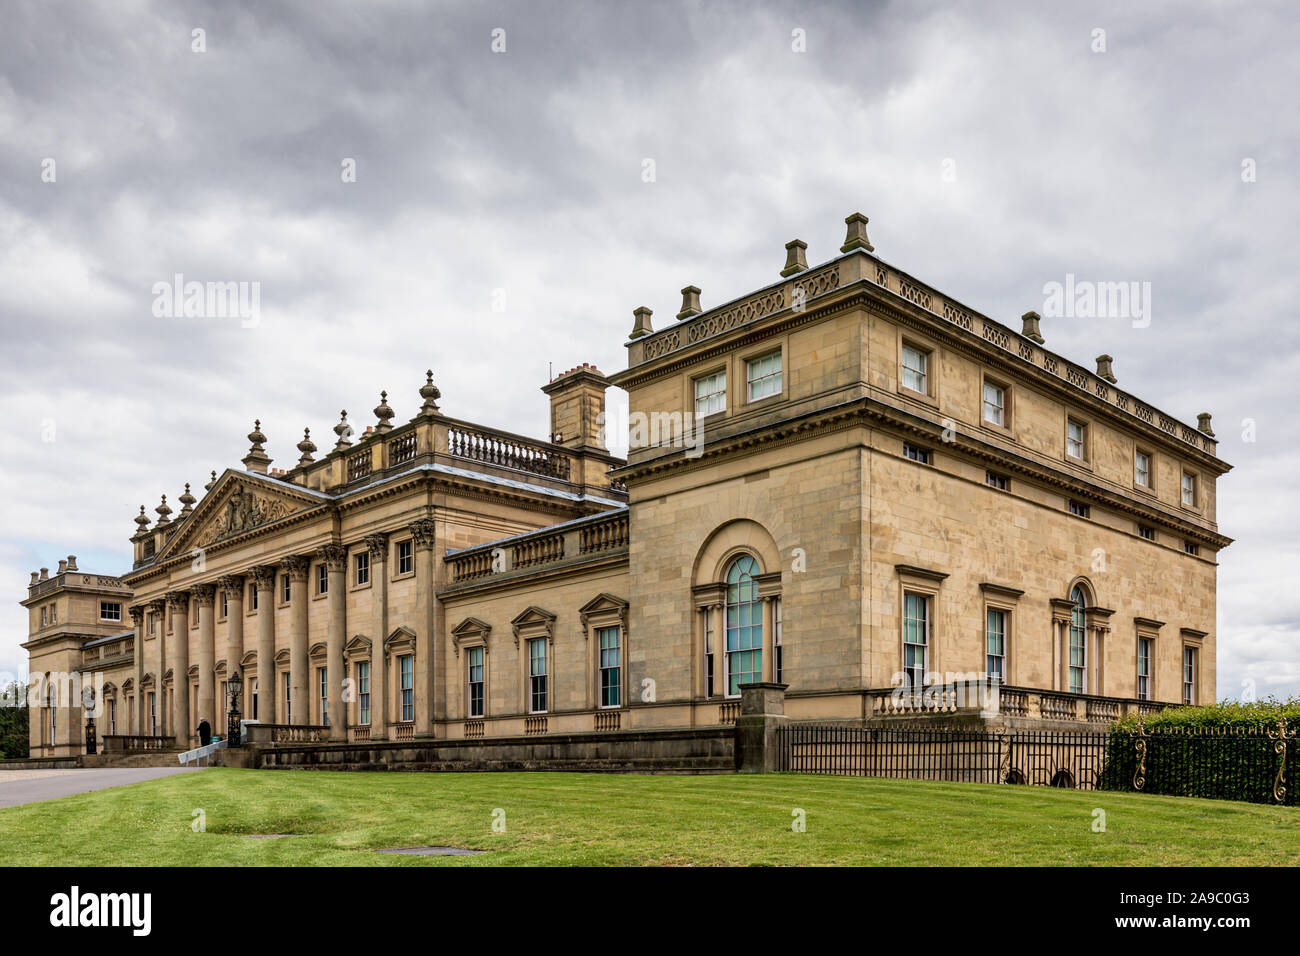 Le quartier historique de Harewood House et jardins près de Leeds, West Yorkshire, Angleterre. Conçu par les architectes John Carr et Robert Adam. Banque D'Images